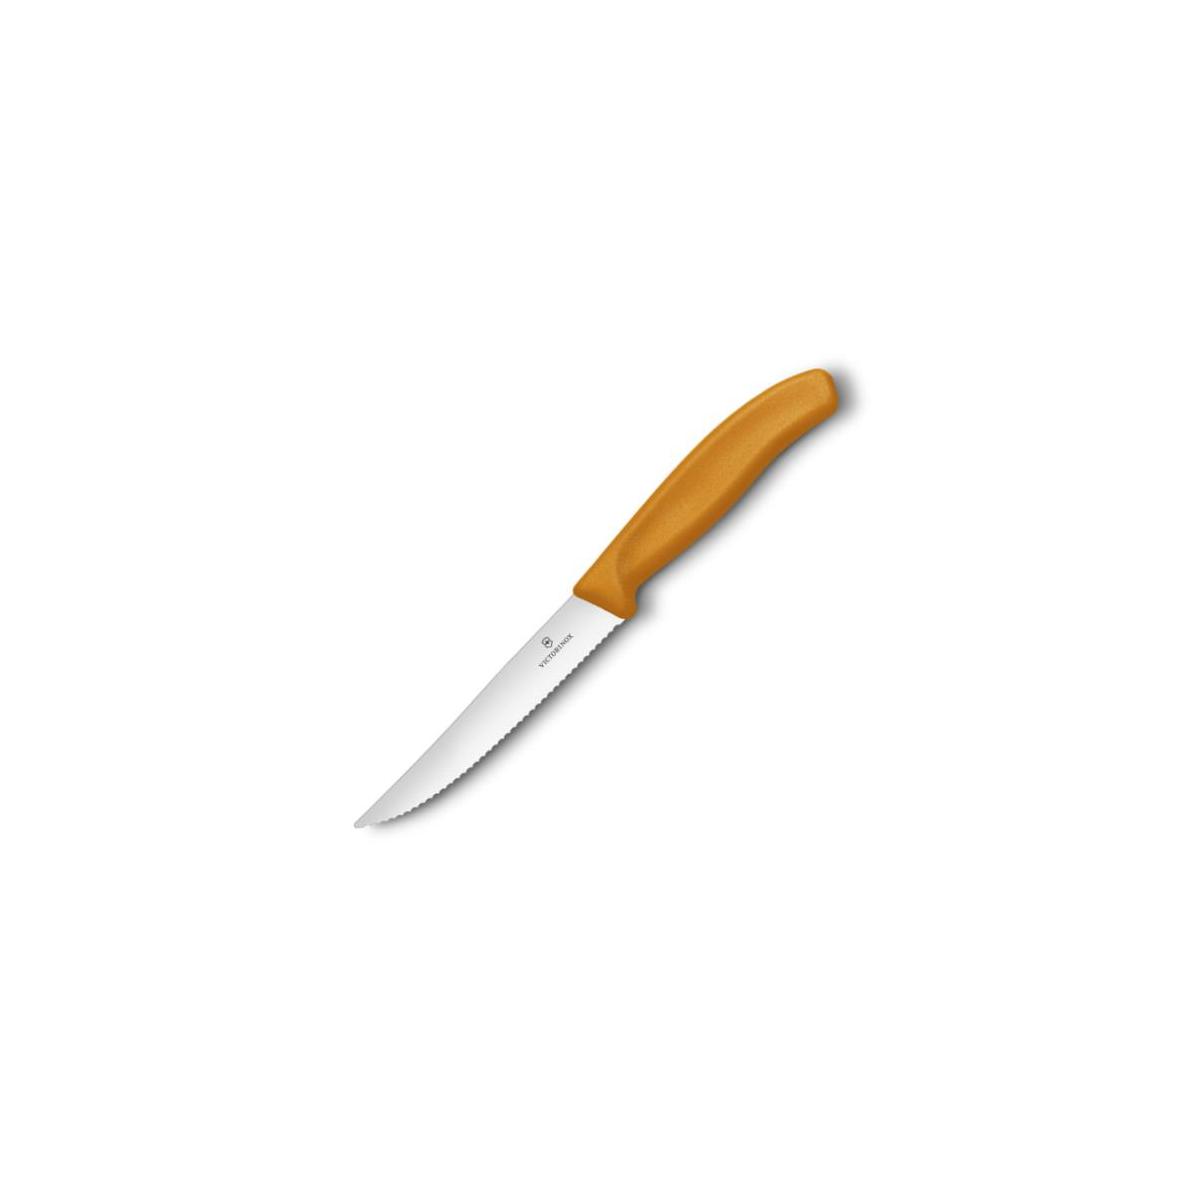 Victorinox nóż uniwersalny 12cm ząbkowany pomarańc